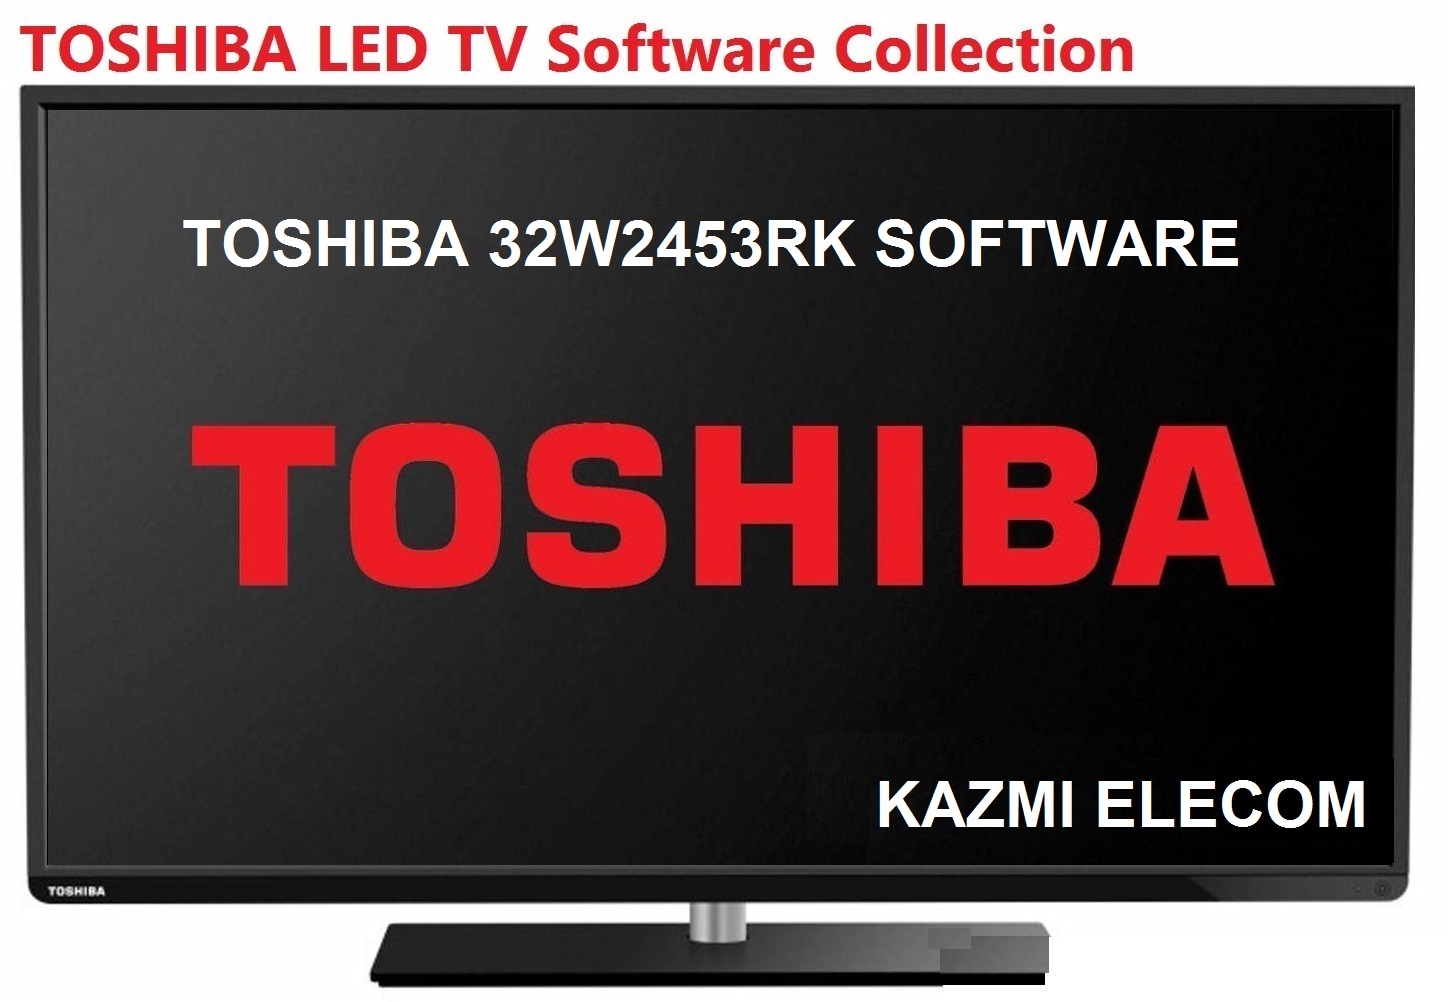 Toshiba 32W2453RK